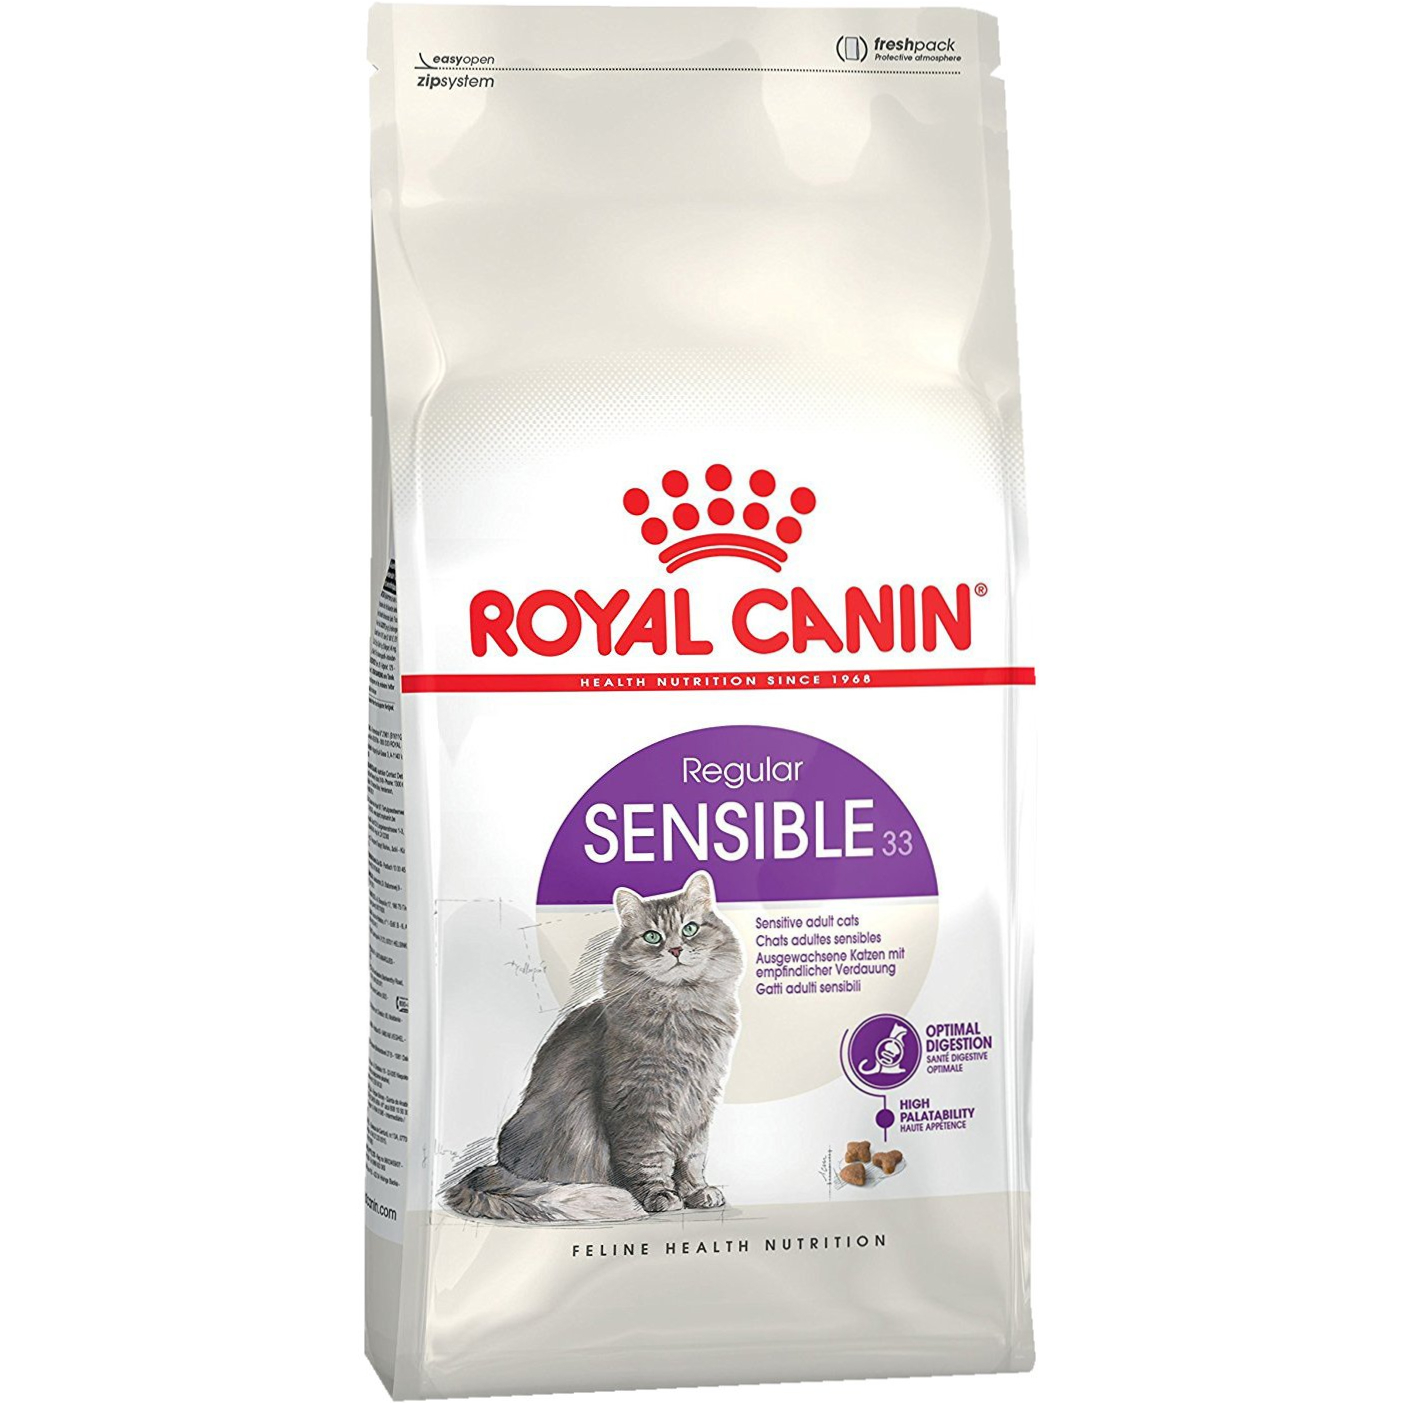 фото Корм для кошек royal canin sensible 33 с чувствительным пищеварением 1,2 кг